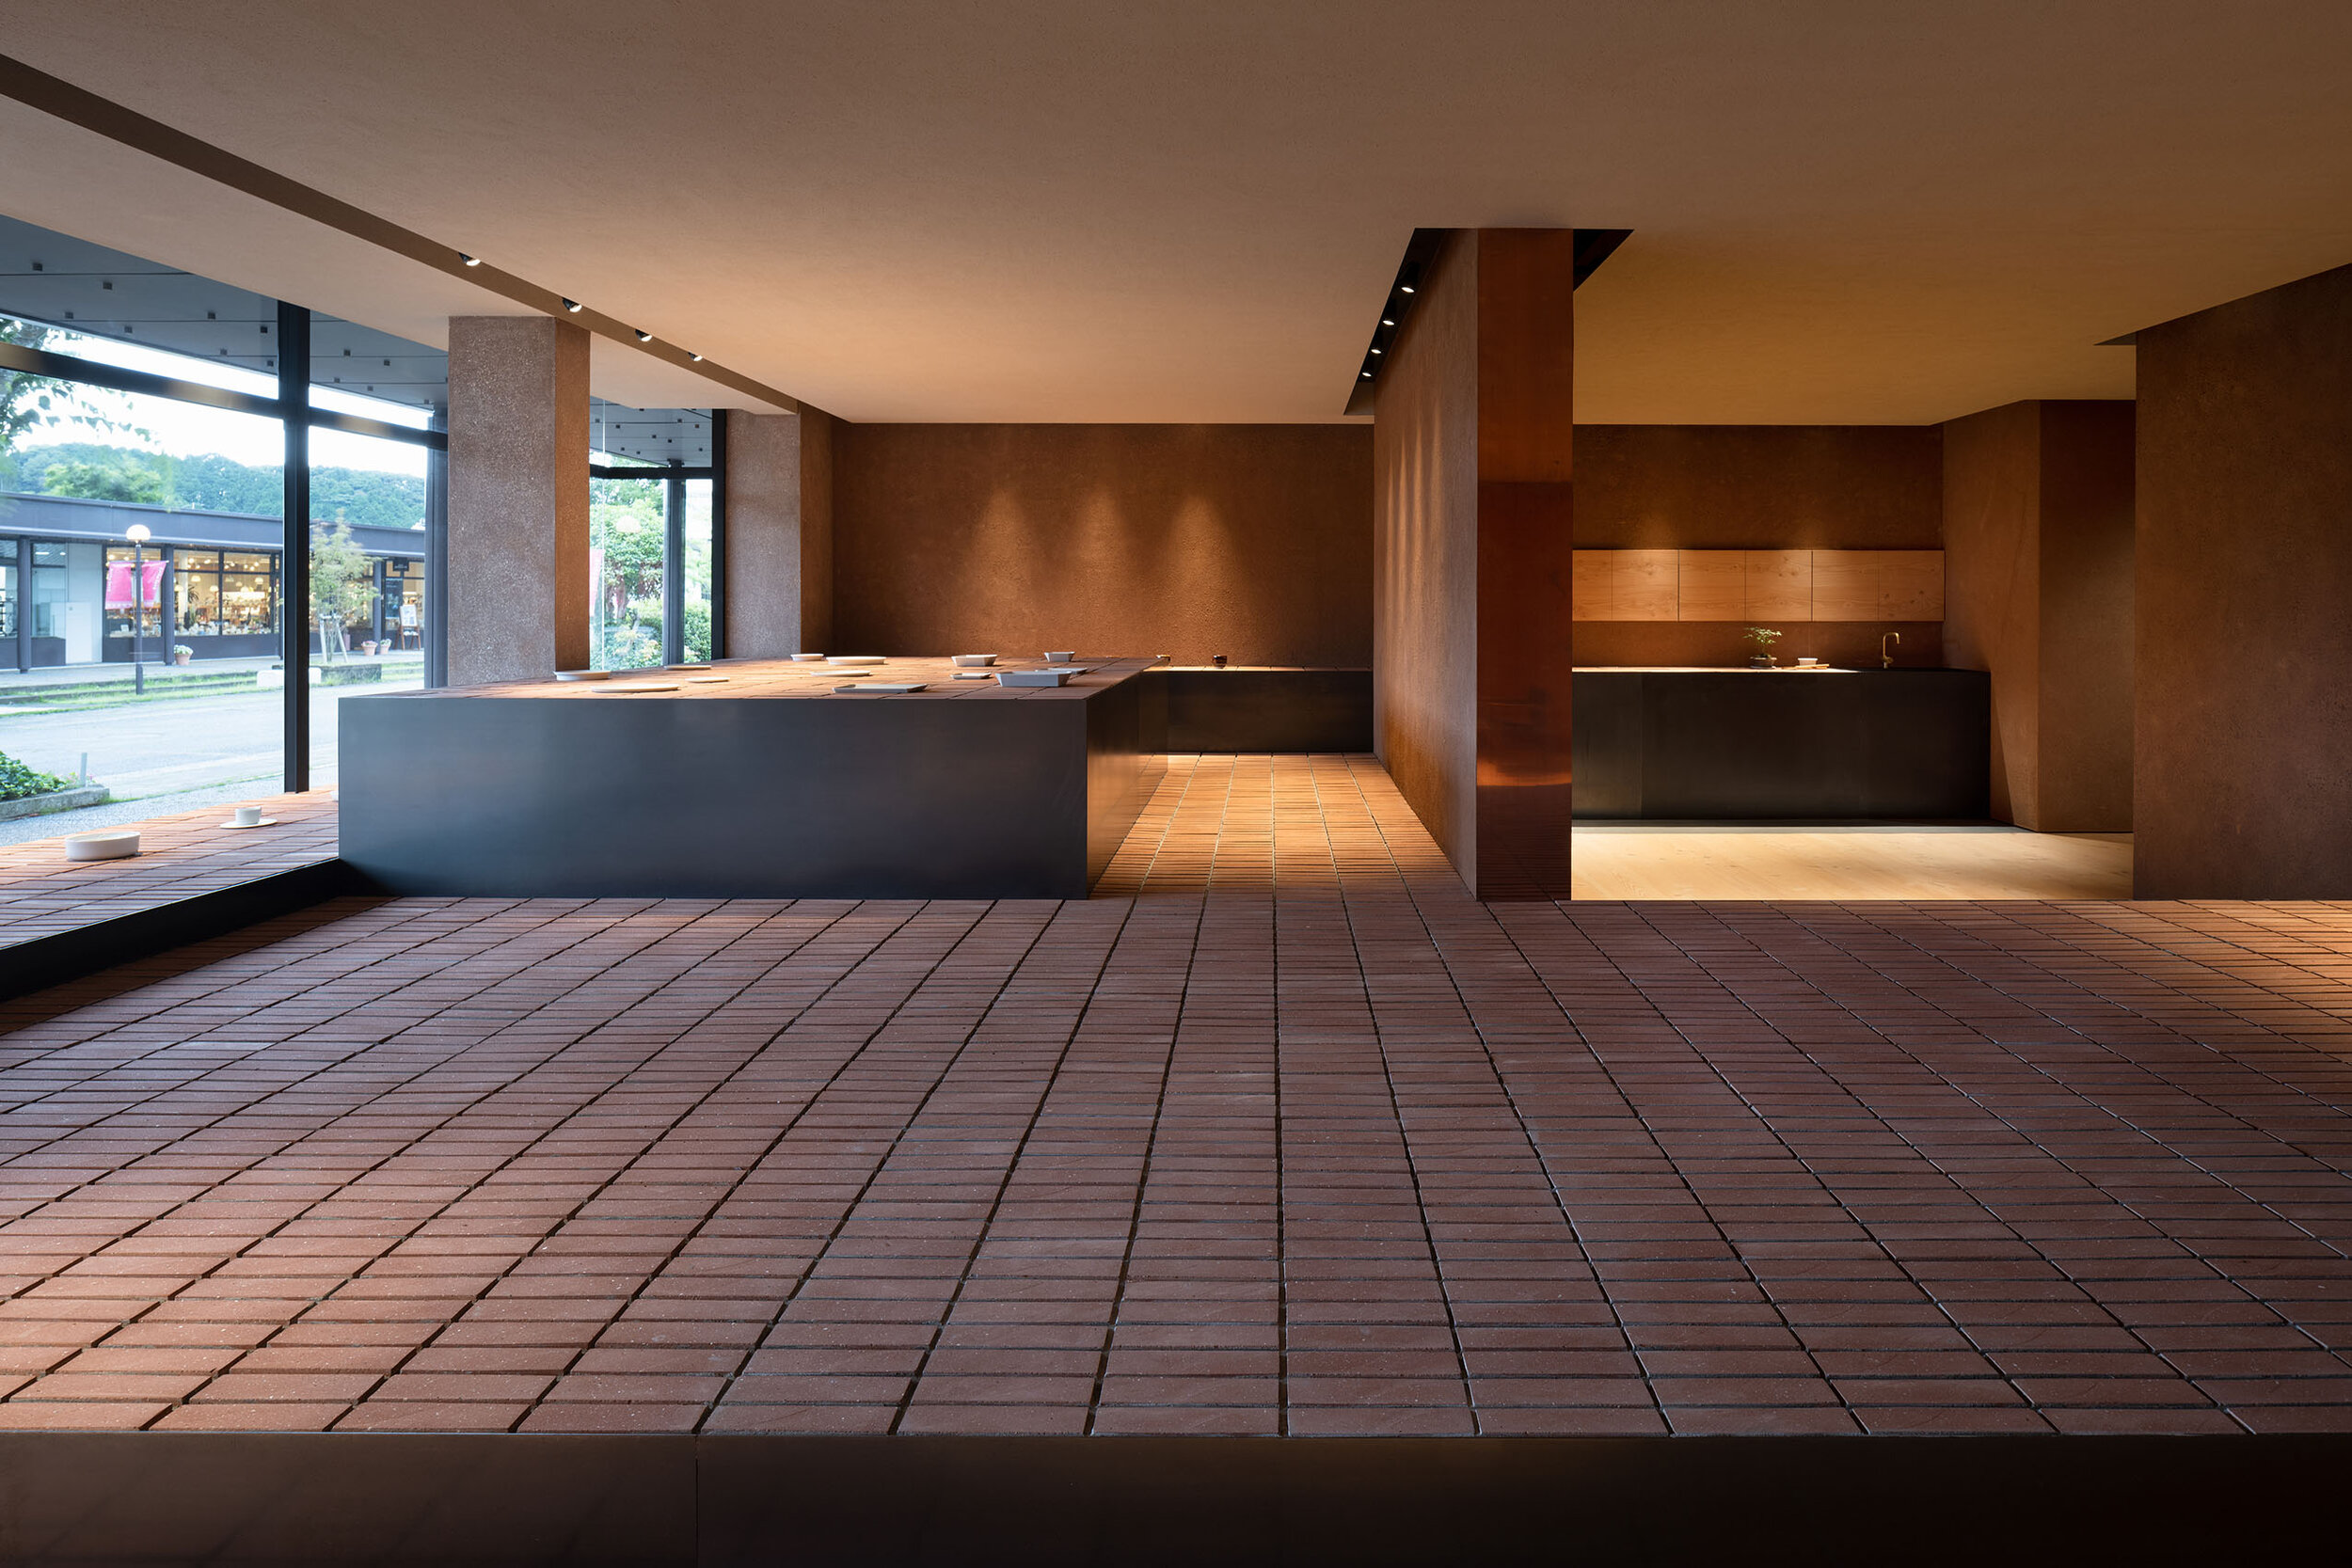  Teruhiro Yanagihara Studio used custom-made bricks for 1616/arita japan showroom in Arita, Japan. 